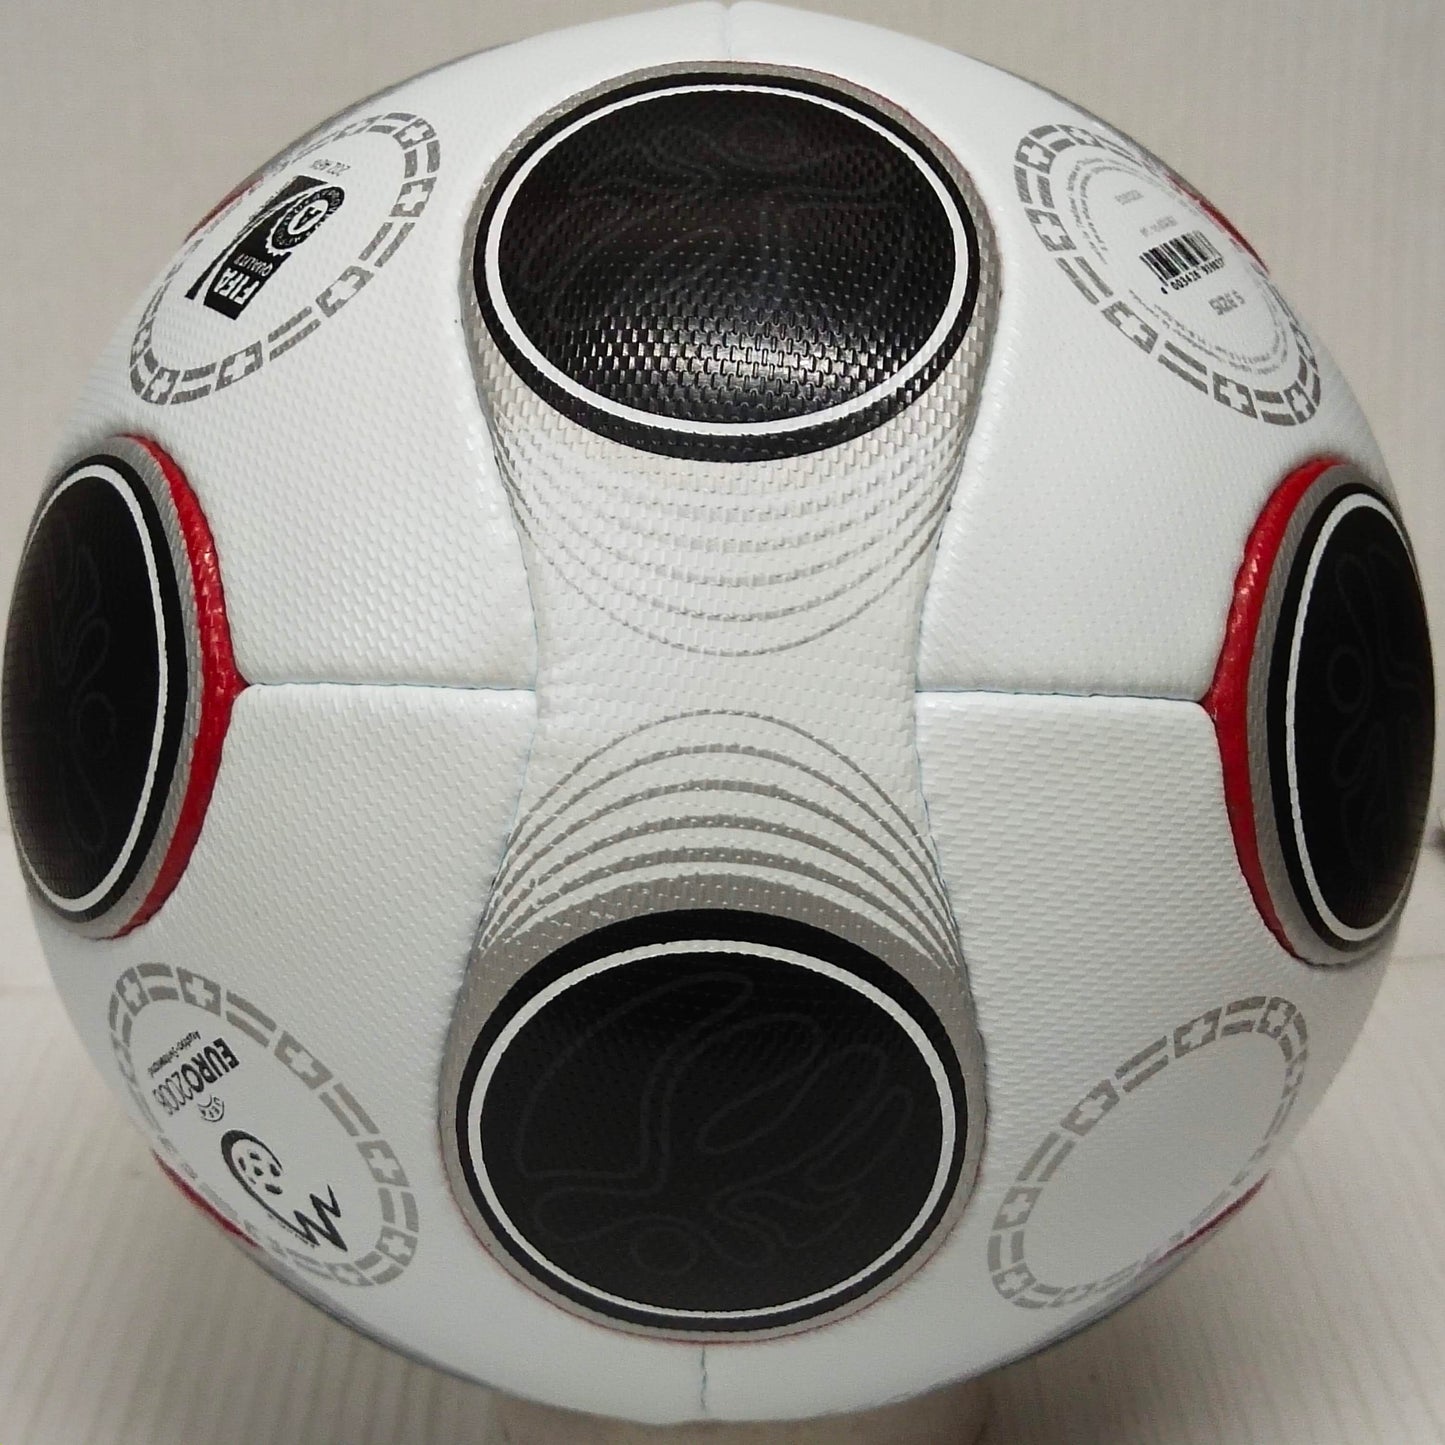 Adidas Europass | 2008 | UEFA Europa League | Official Match Ball | Size 5 07